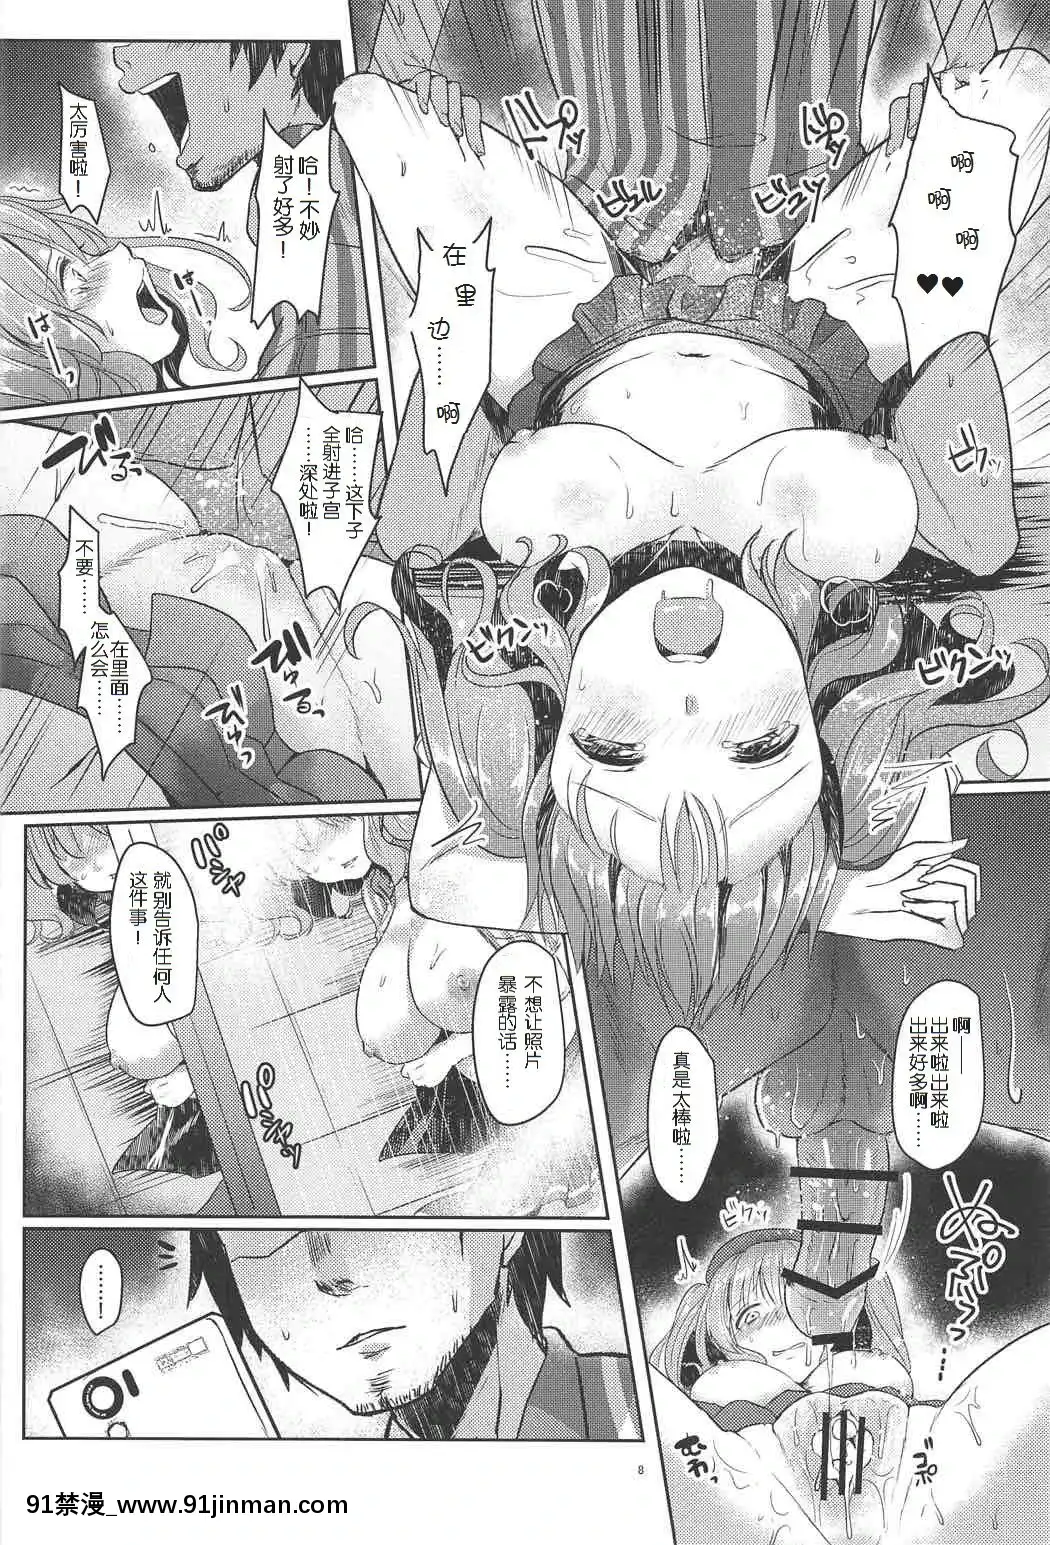 [Chữ Hán của mẹ cái chết của bột ngọt] (C91) [Đơn sắc lạ mắt (Abi)] Kashima san sẽ bị xâm phạm (Bộ sưu tập máy bay chiến đấu  Fighter Colle )【everyone else is a returnee truyện tranh】